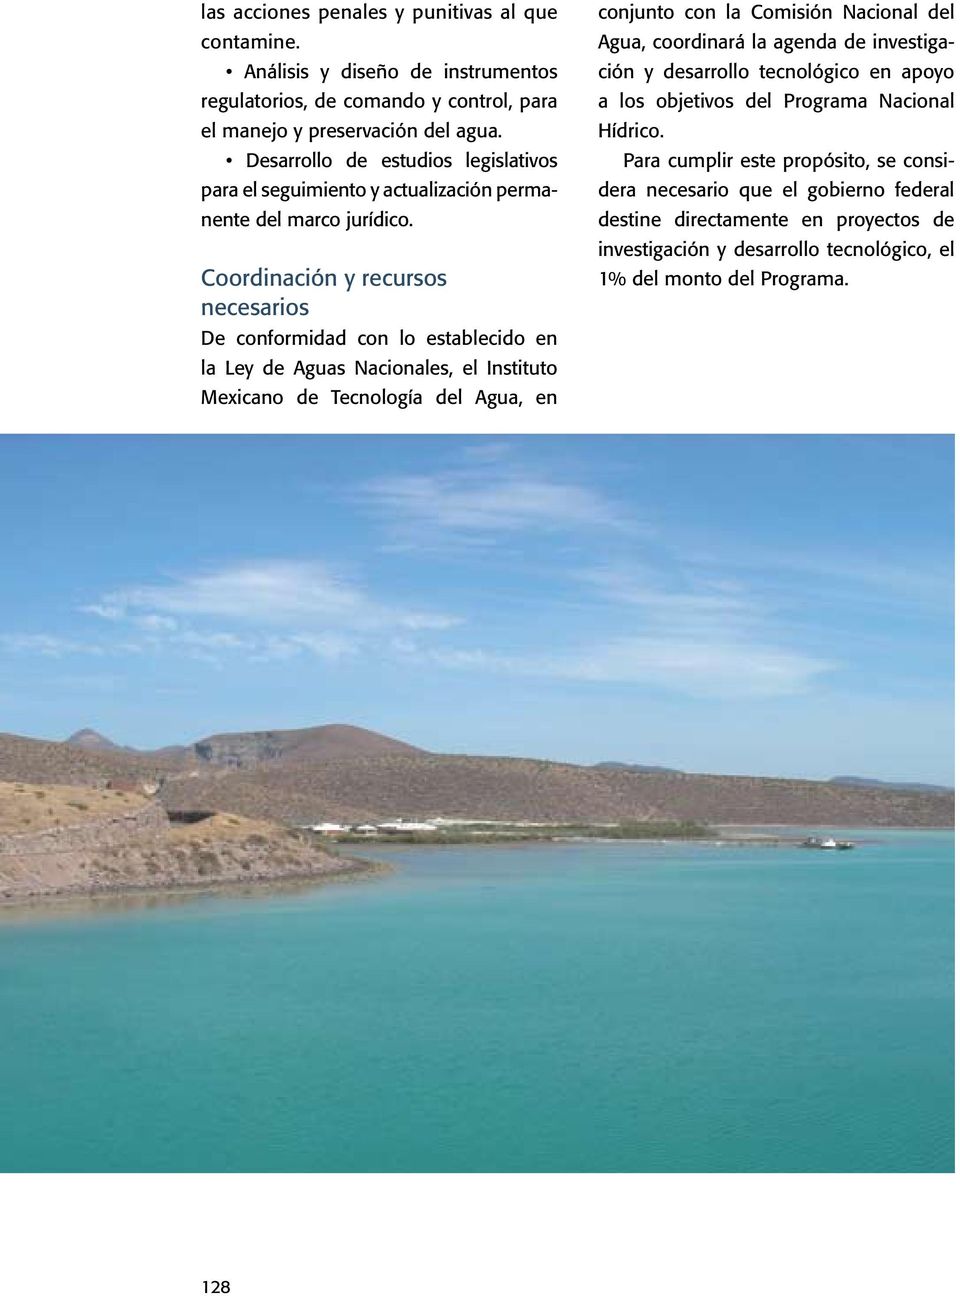 Coordinación y recursos necesarios De conformidad con lo establecido en la Ley de Aguas Nacionales, el Instituto Mexicano de Tecnología del Agua, en conjunto con la Comisión Nacional del